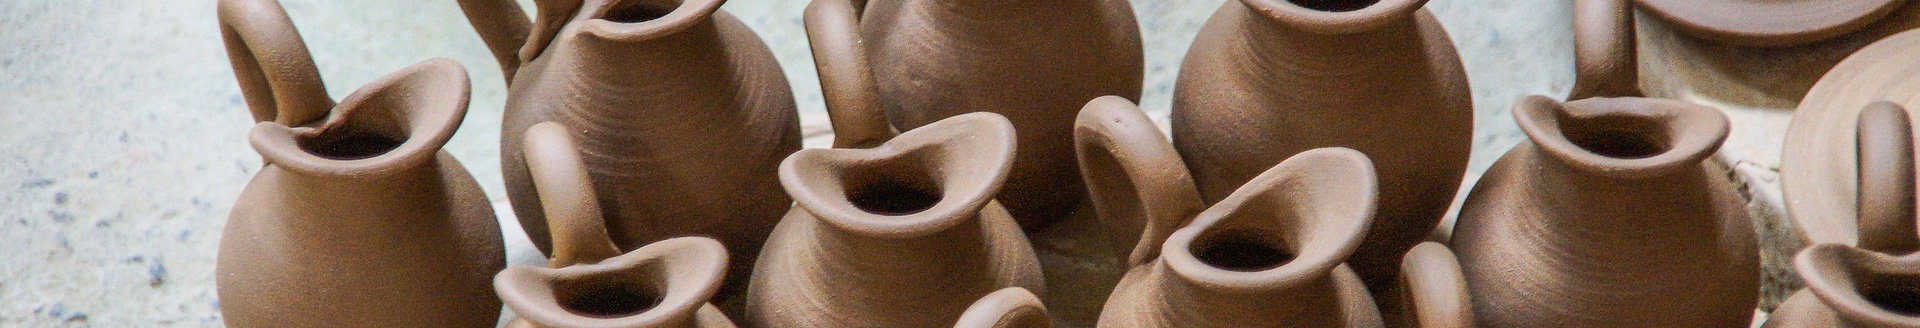 cristalleria ceramica artigiana shop online prodotti in terracotta